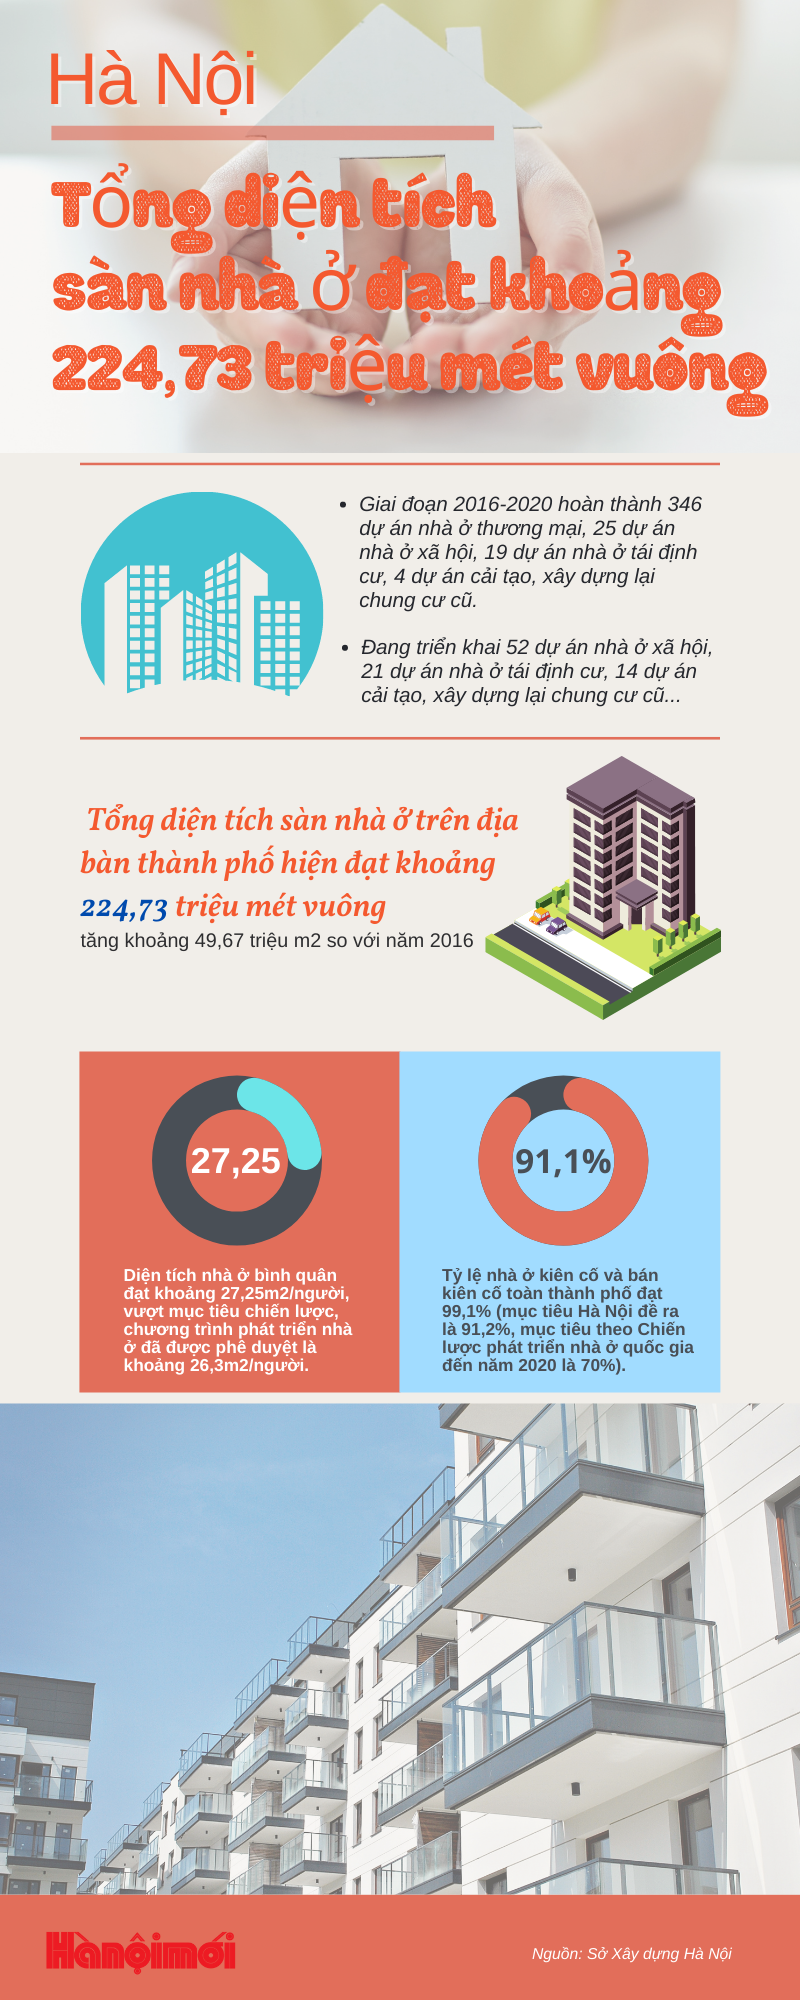 [Infographics] Hà Nội đang triển khai 52 dự án nhà ở xã hội, 21 dự án nhà ở tái định cư - Ảnh 1